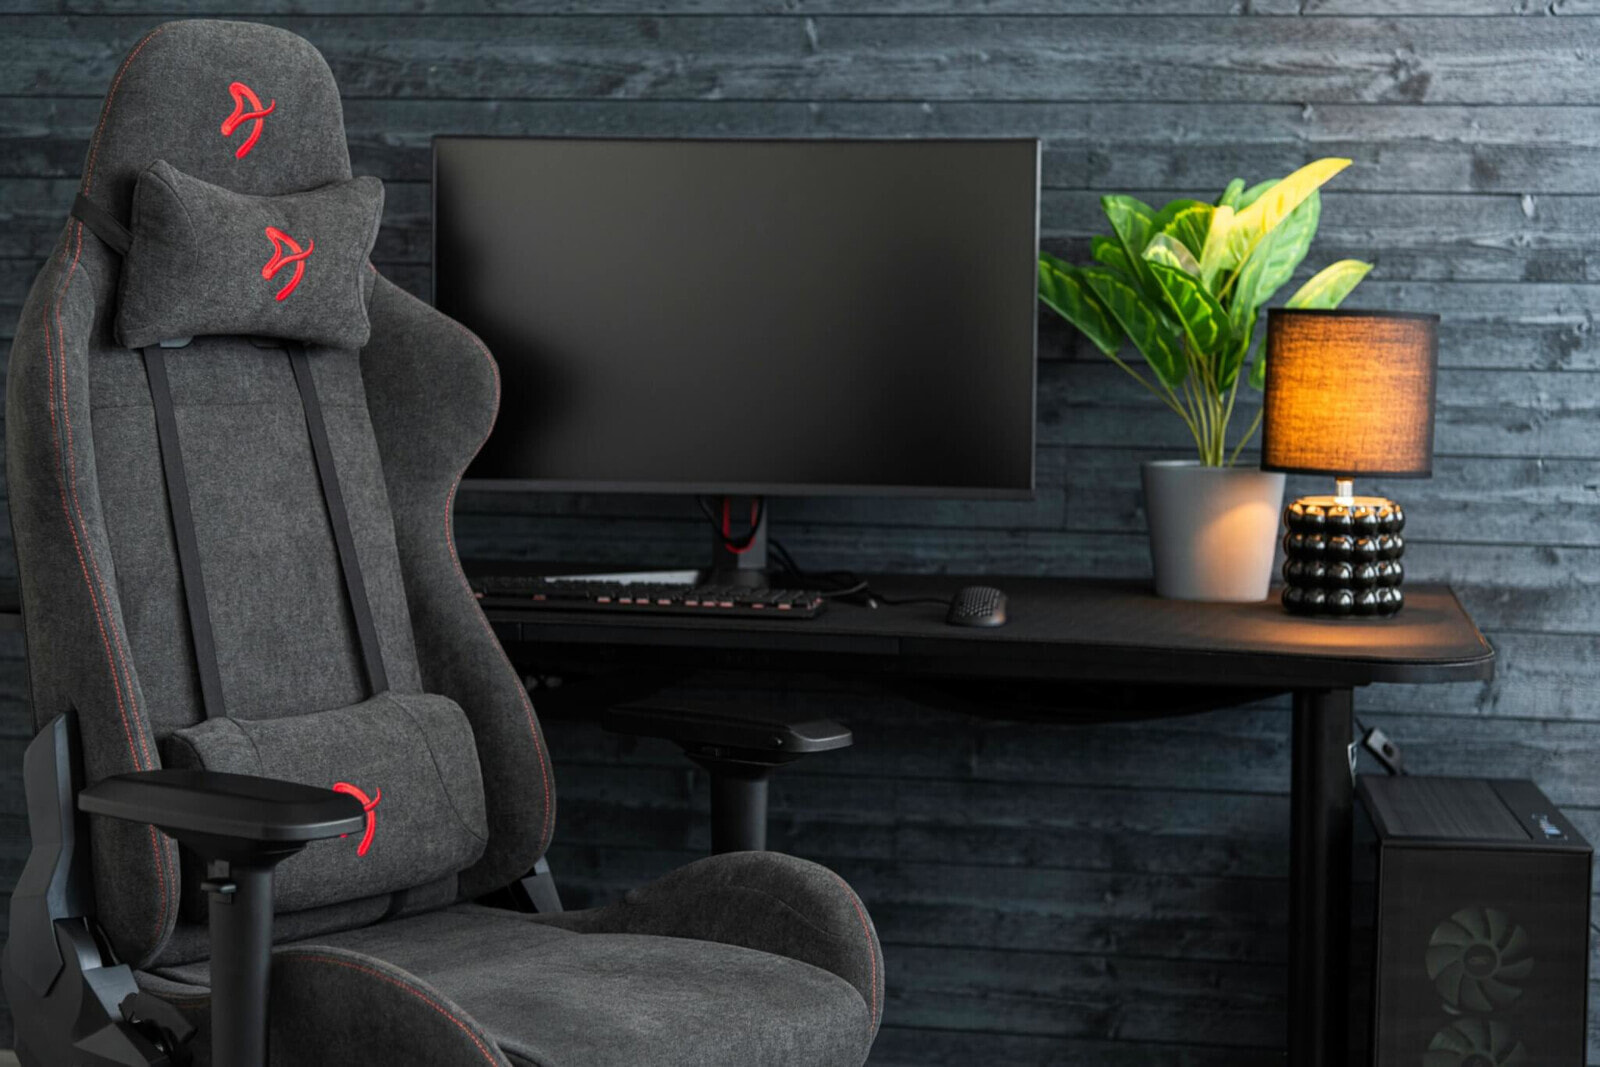 Arozzi Verona -SIG-SFB-RD геймерское кресло Игровое кресло для ПК Сиденье с мягкой обивкой Серый, Красный VERONA-SIG-SFB-RD